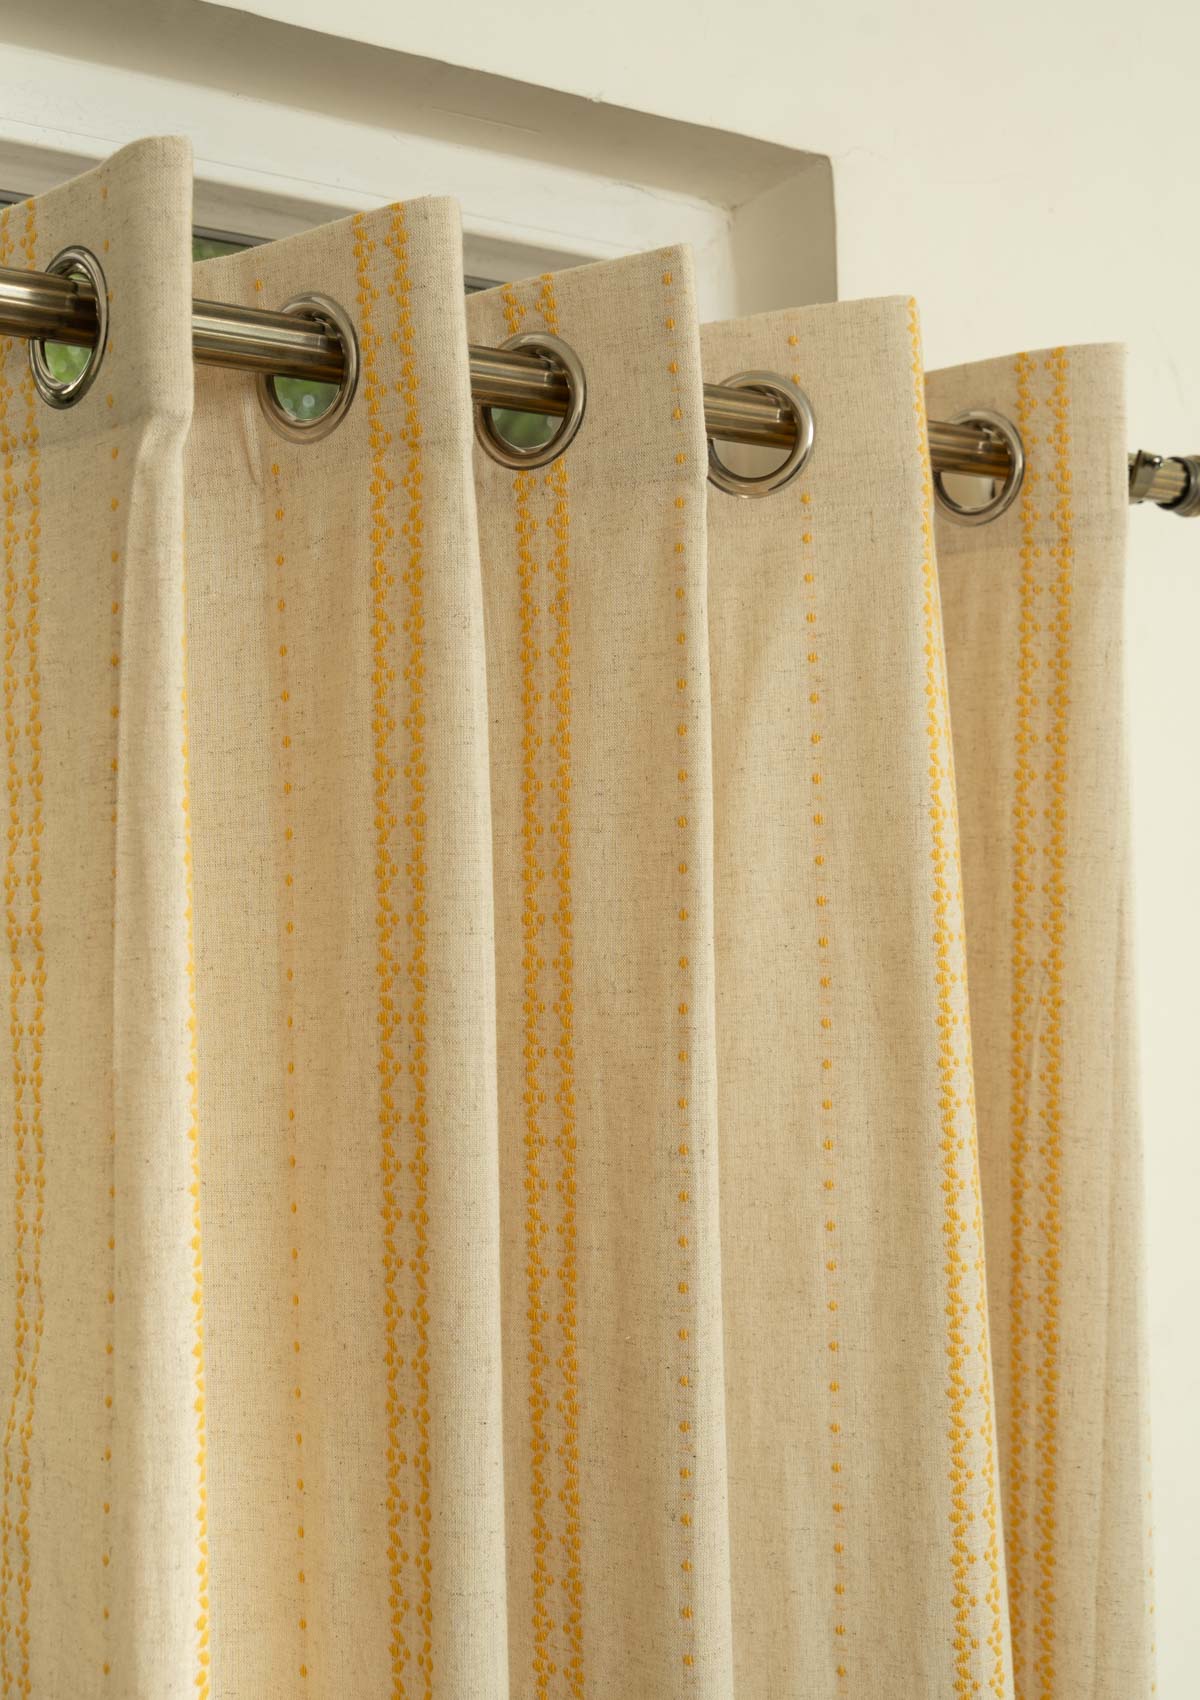 Aster linen minimal design curtain for living room - Room darkening - Mustard - Pack of 1